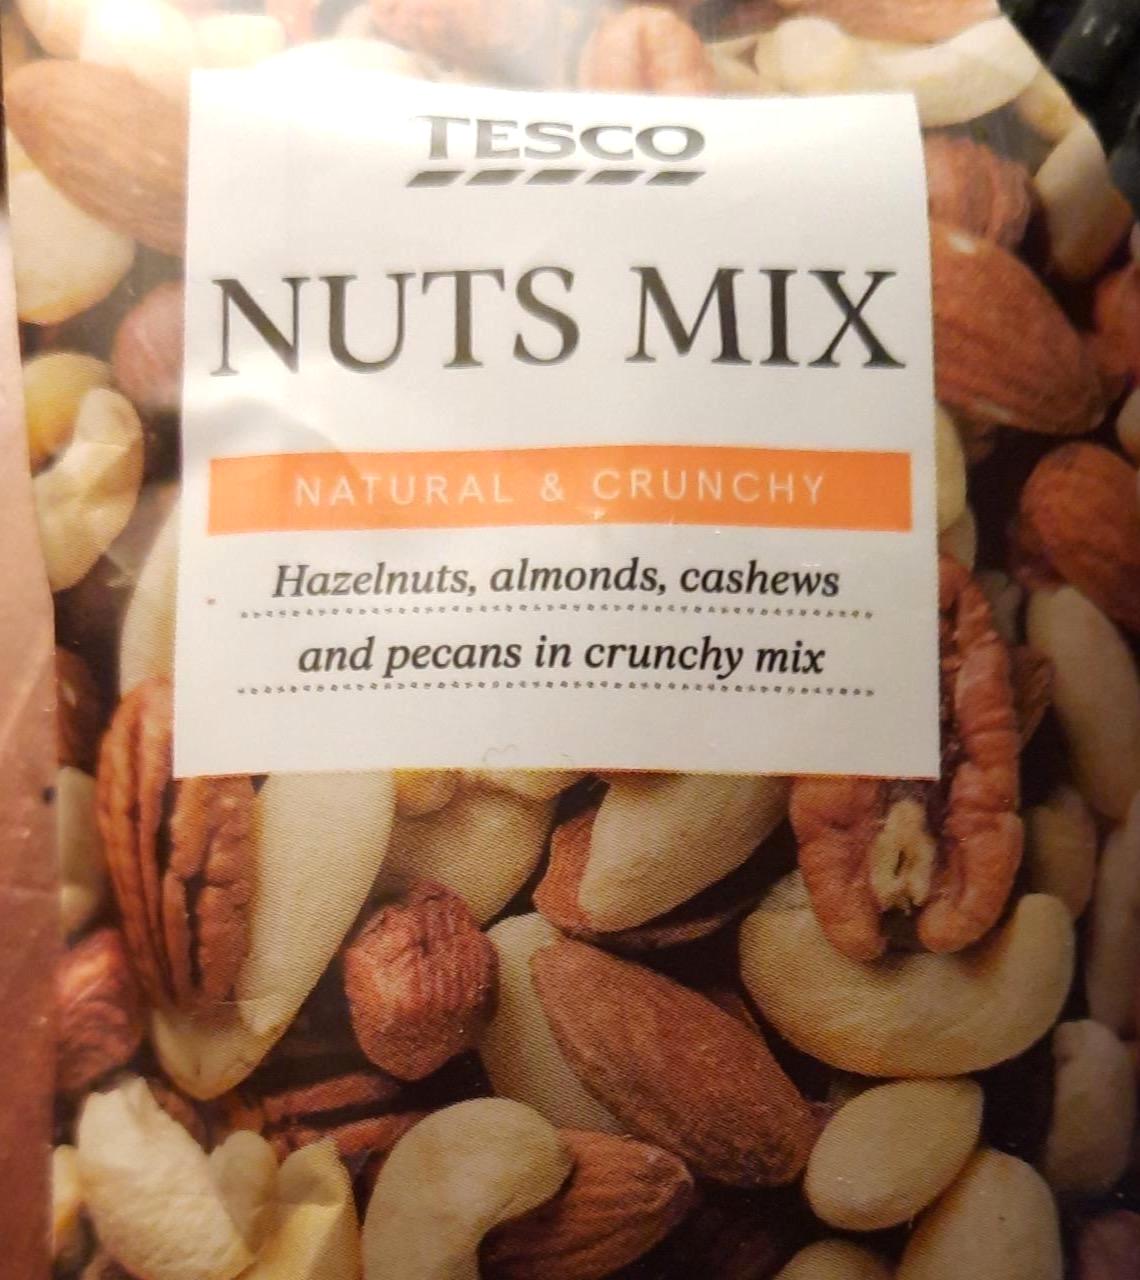 Képek - Nuts mix Tesco